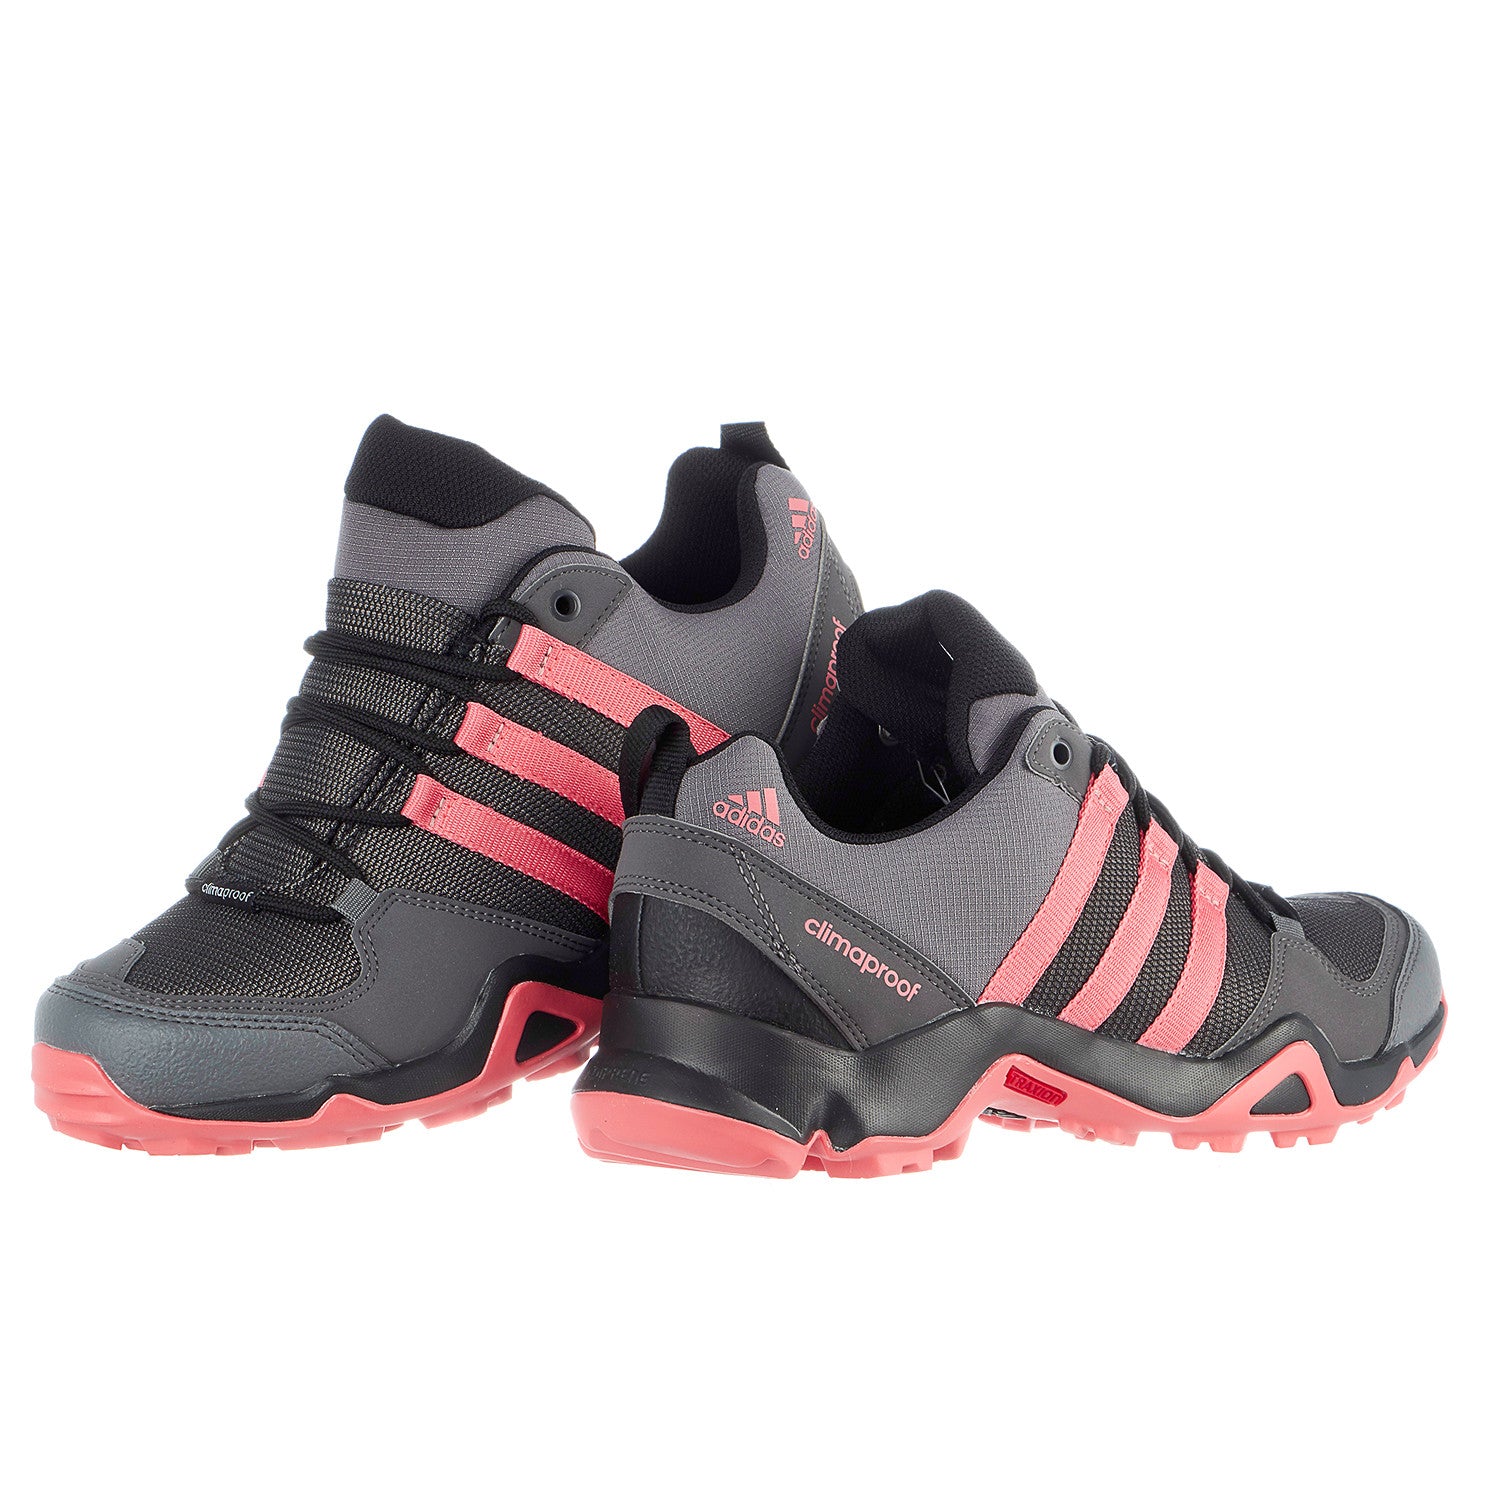 Adidas Outdoor AX 2 Hiking Shoe - Women's -